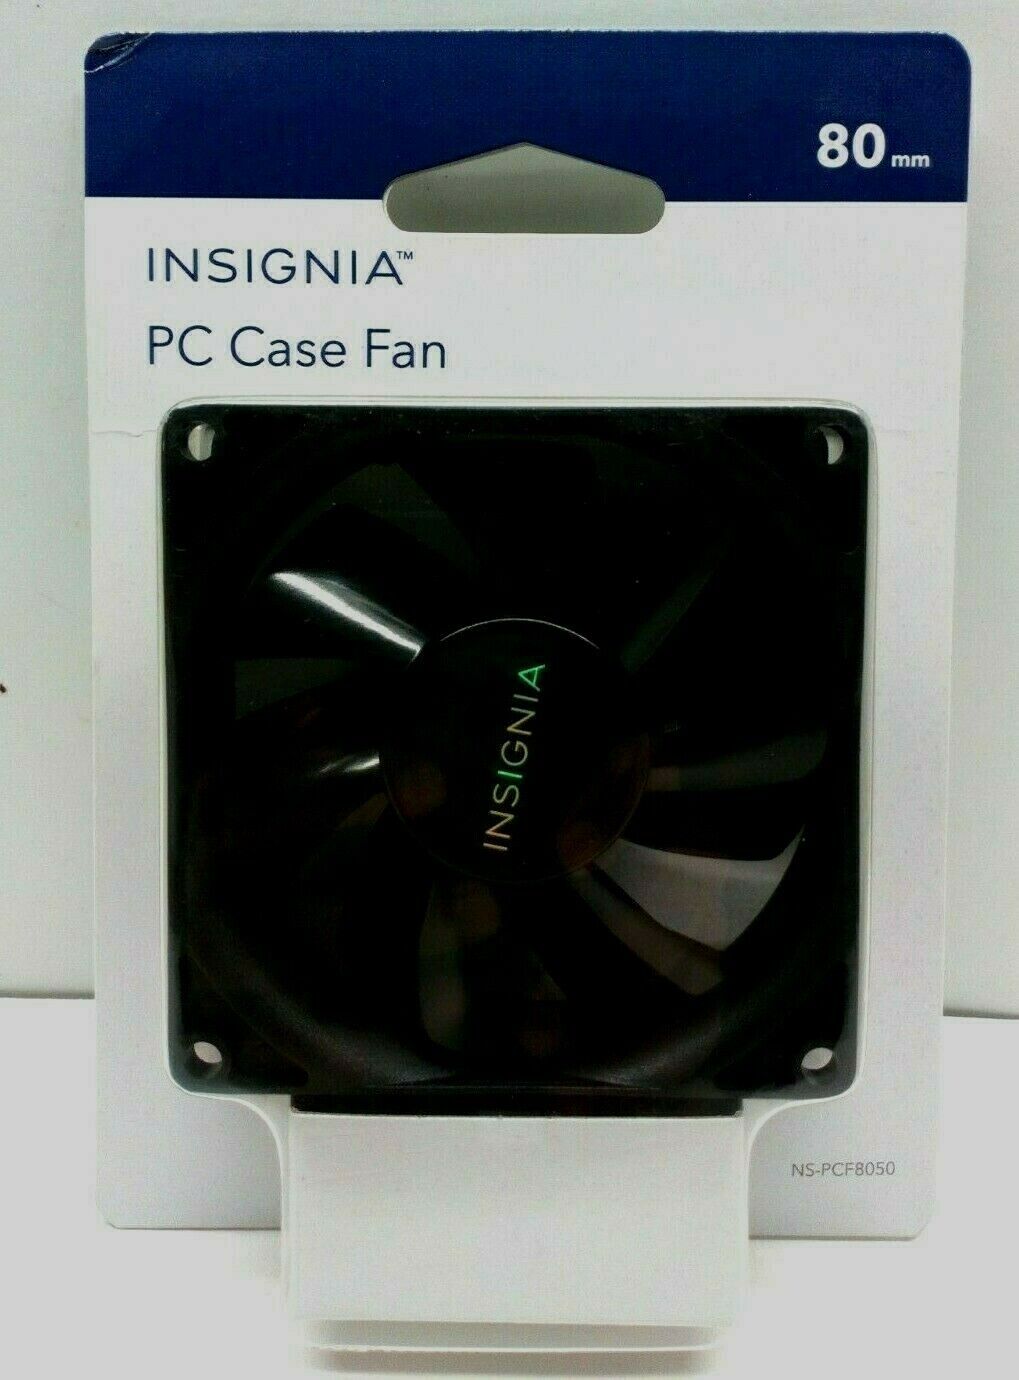  Insignia 80mm PC Case Fan